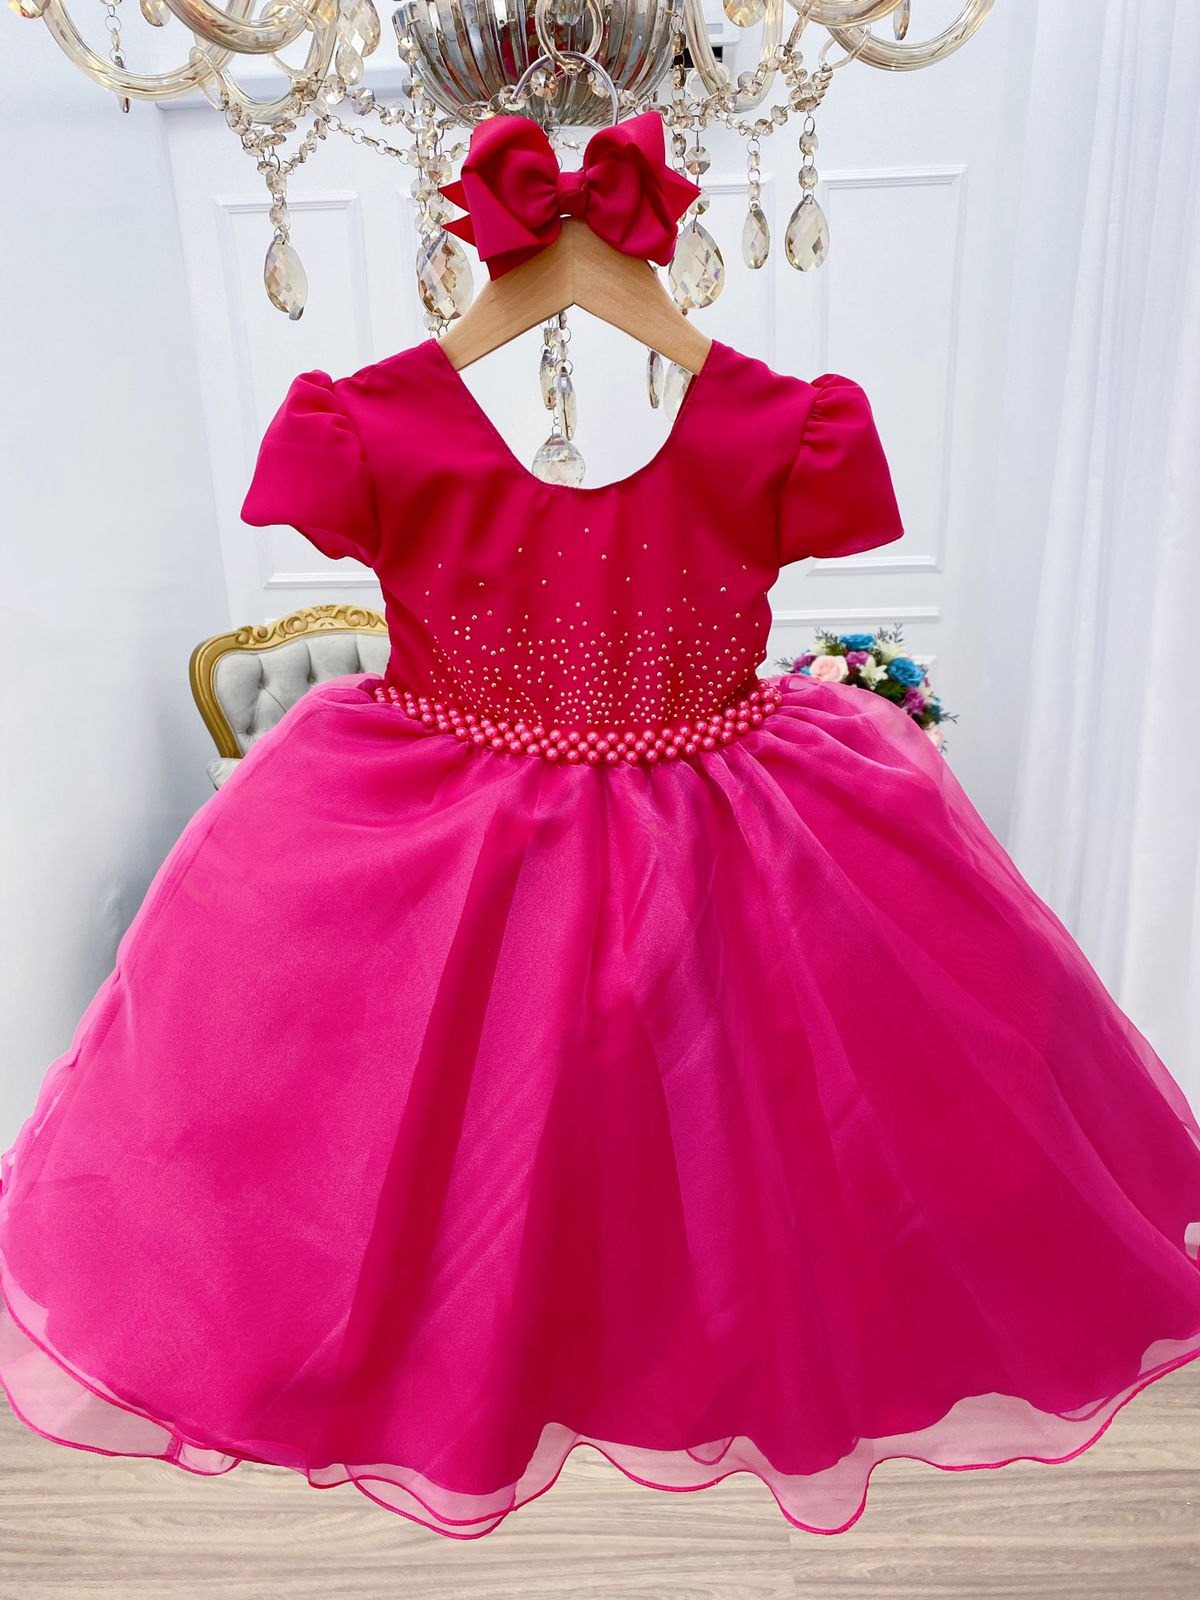 Vestido Infantil: Con Cinturón En La Cintura - Poá - Rosa